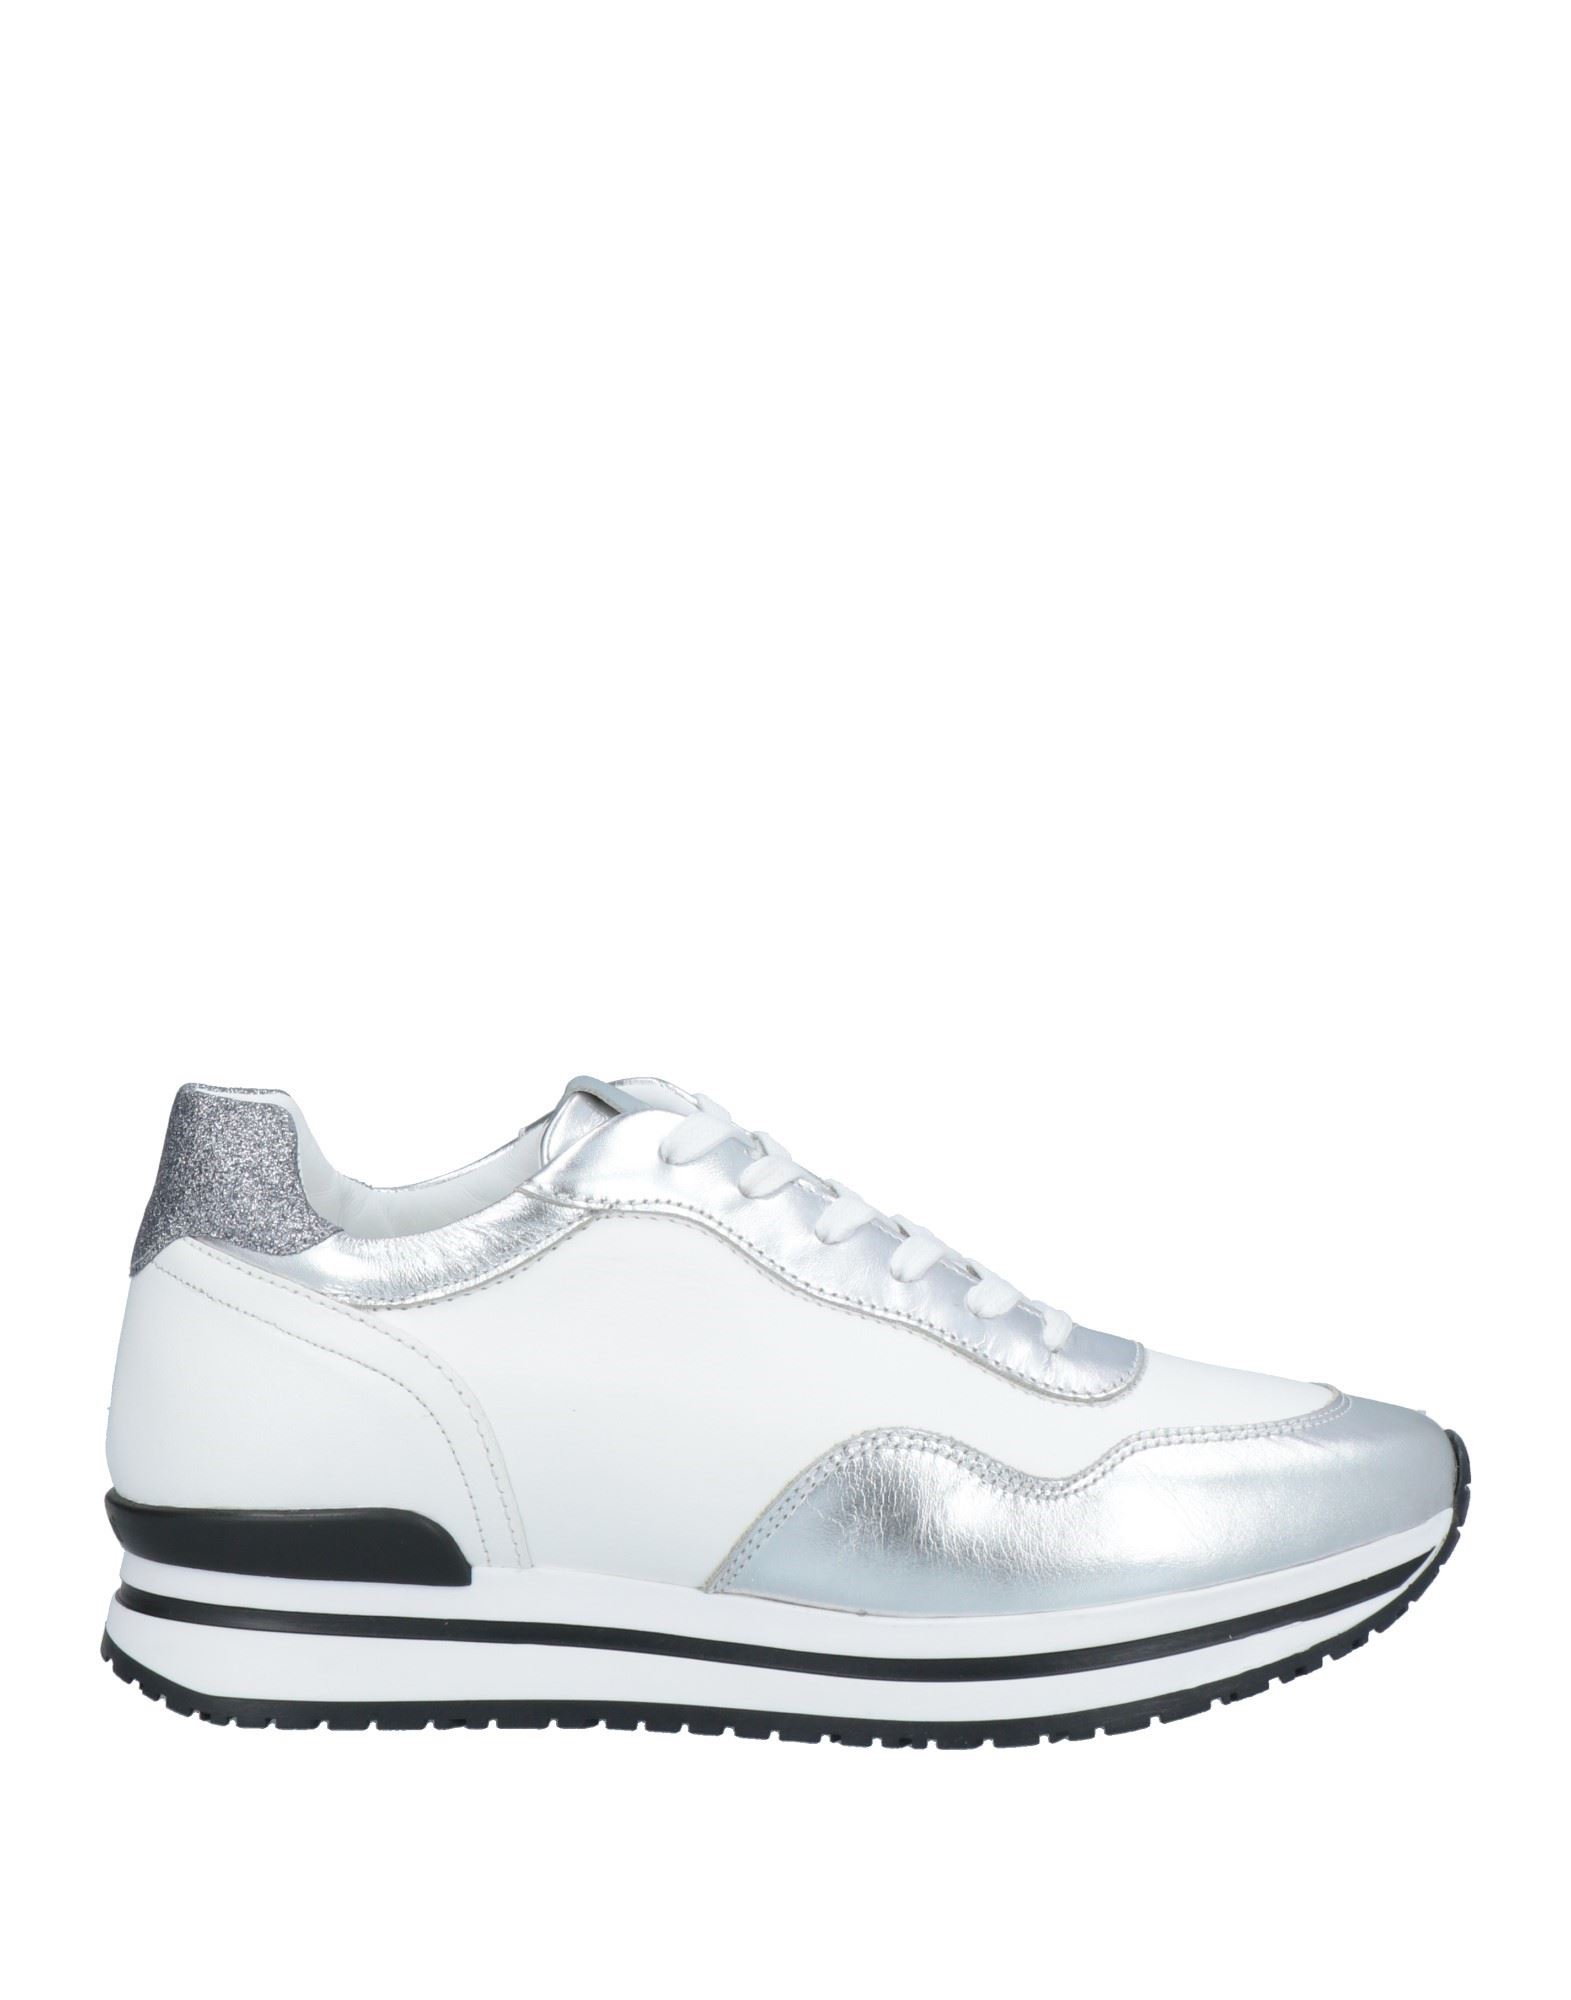 Shop A.testoni A. Testoni Woman Sneakers White Size 10 Calfskin